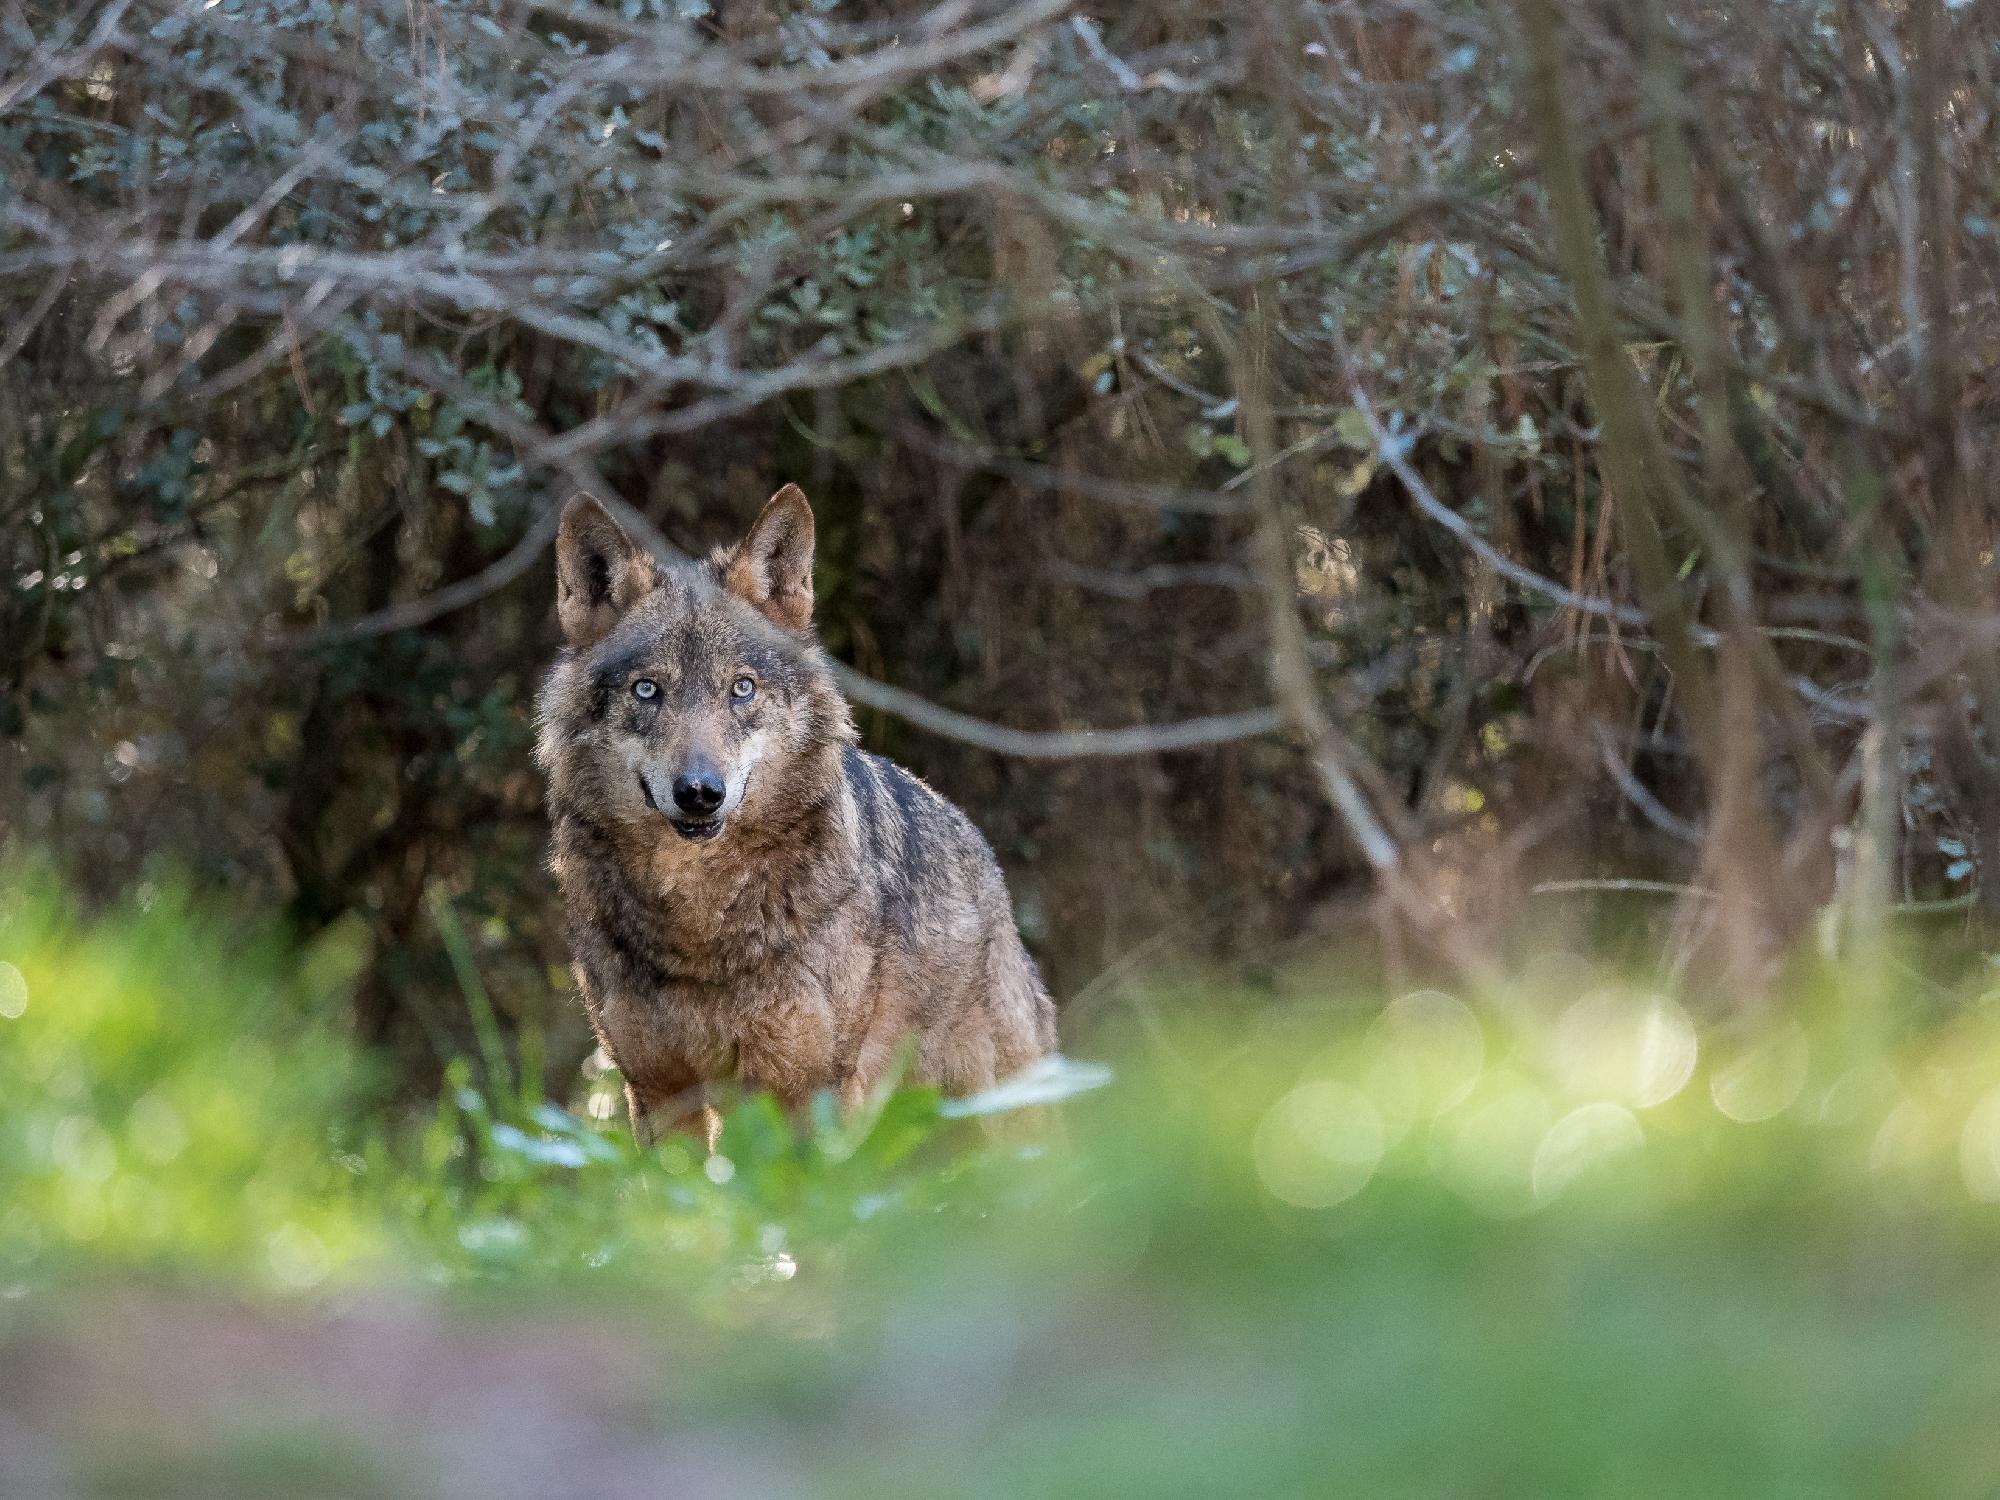 Kihaltnak nyilvánították az ibériai farkast Andalúziában